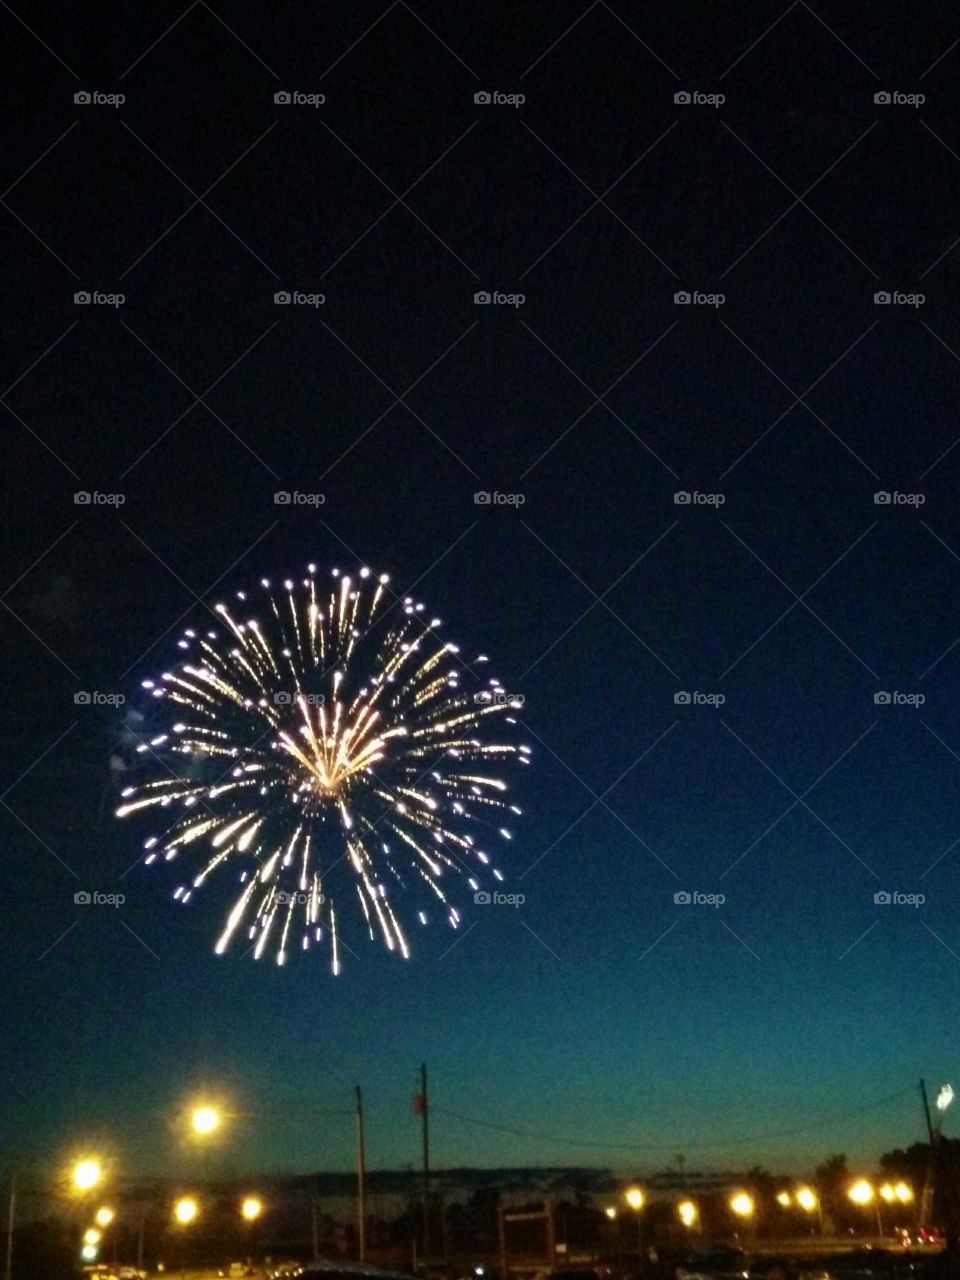 Fireworks burst